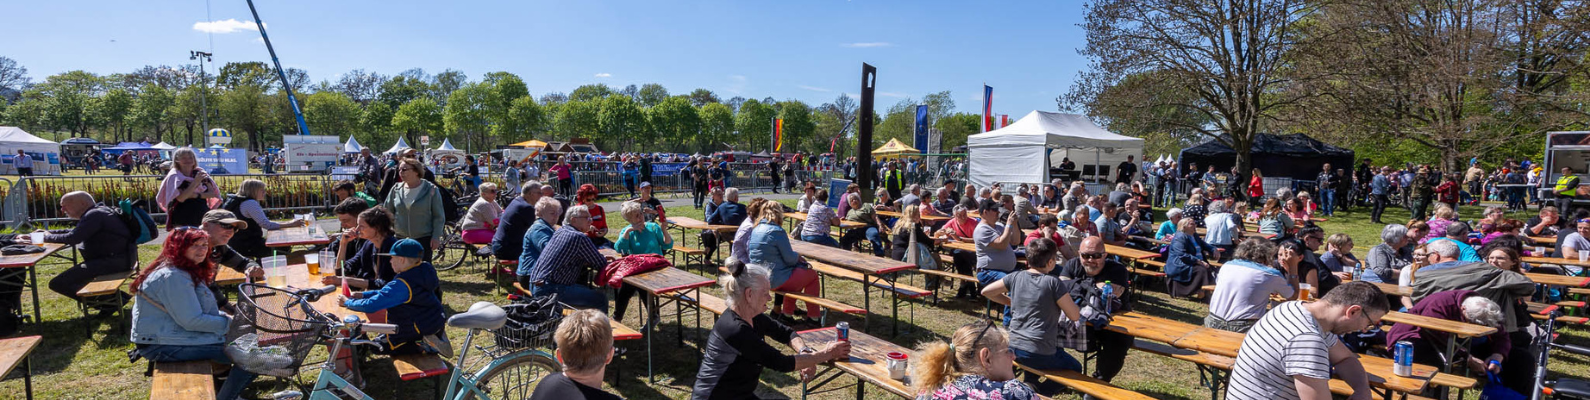 Ein Bild von vielen Menschen, die auf dem Europafest auf Bierbänken in der Sonne sitzen.